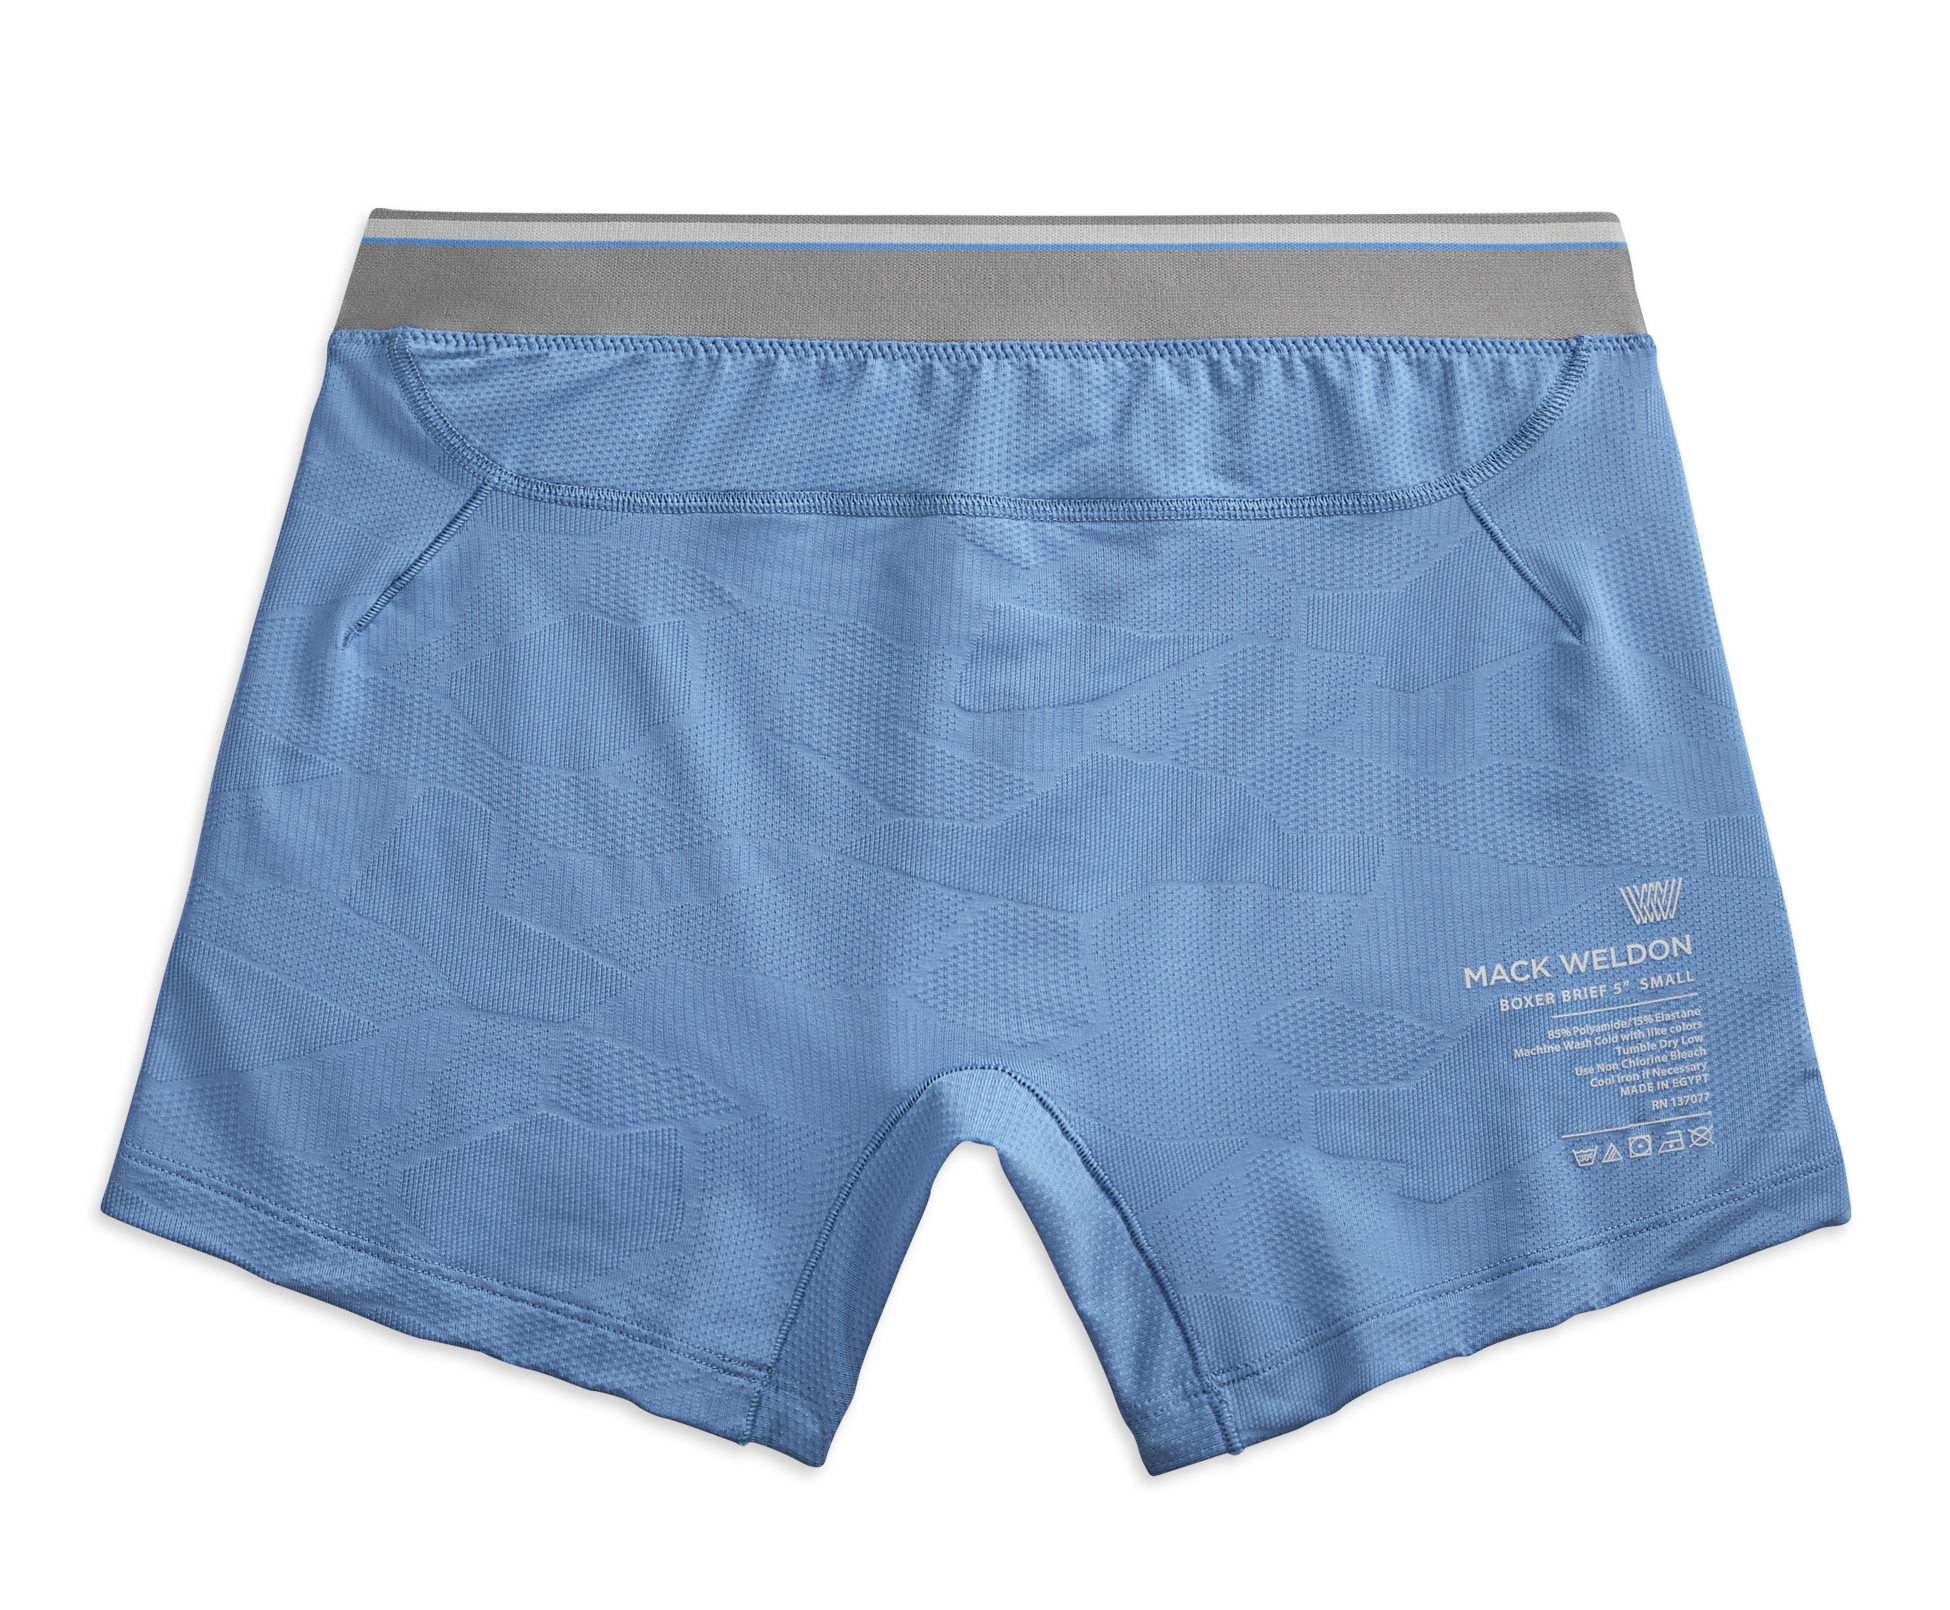 Mack Weldon AIRKNITx HD Underwear, Boxer Briefs, Trunks, Briefs